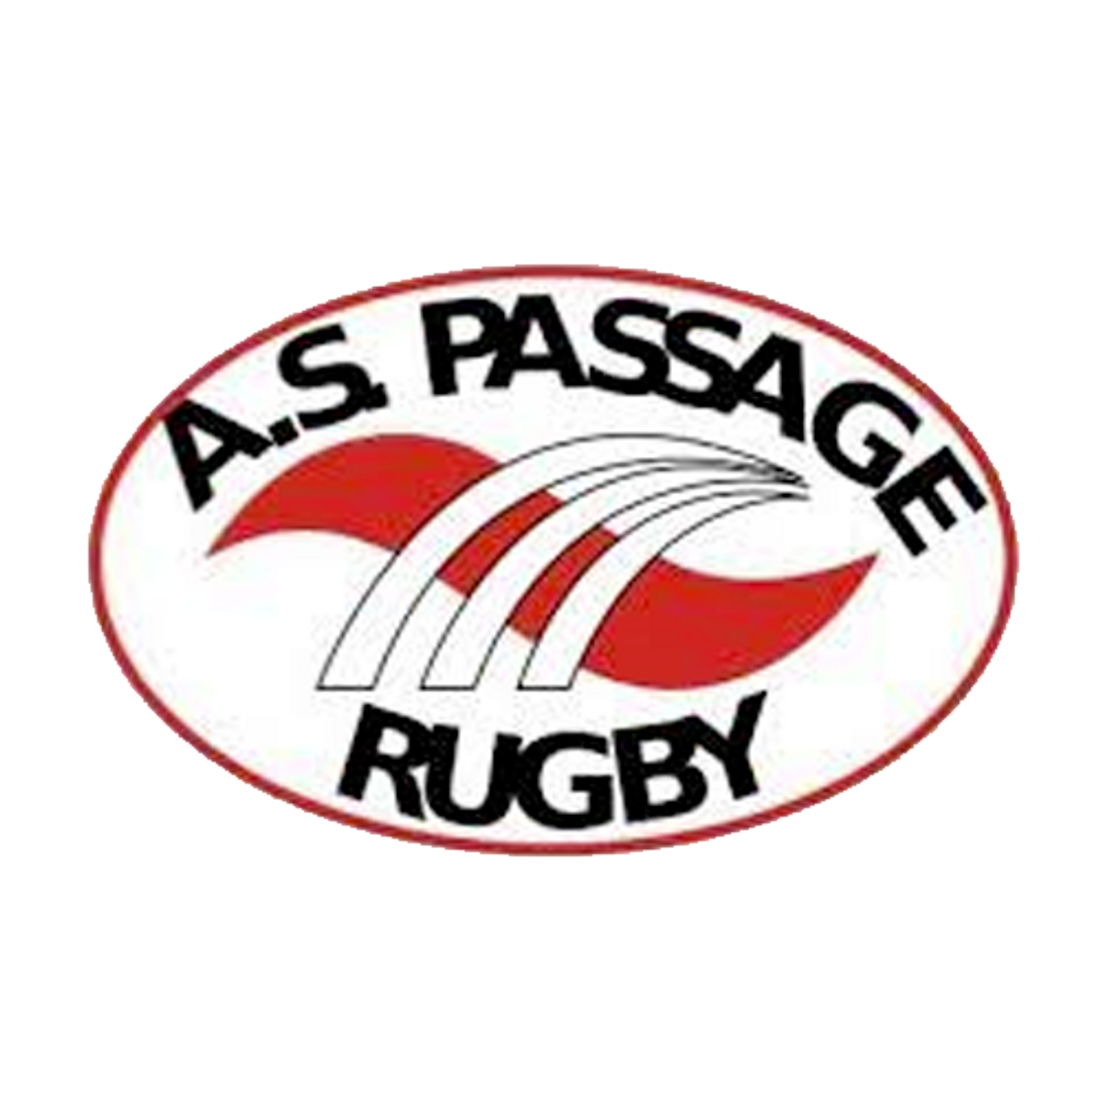 A.S Le Passage